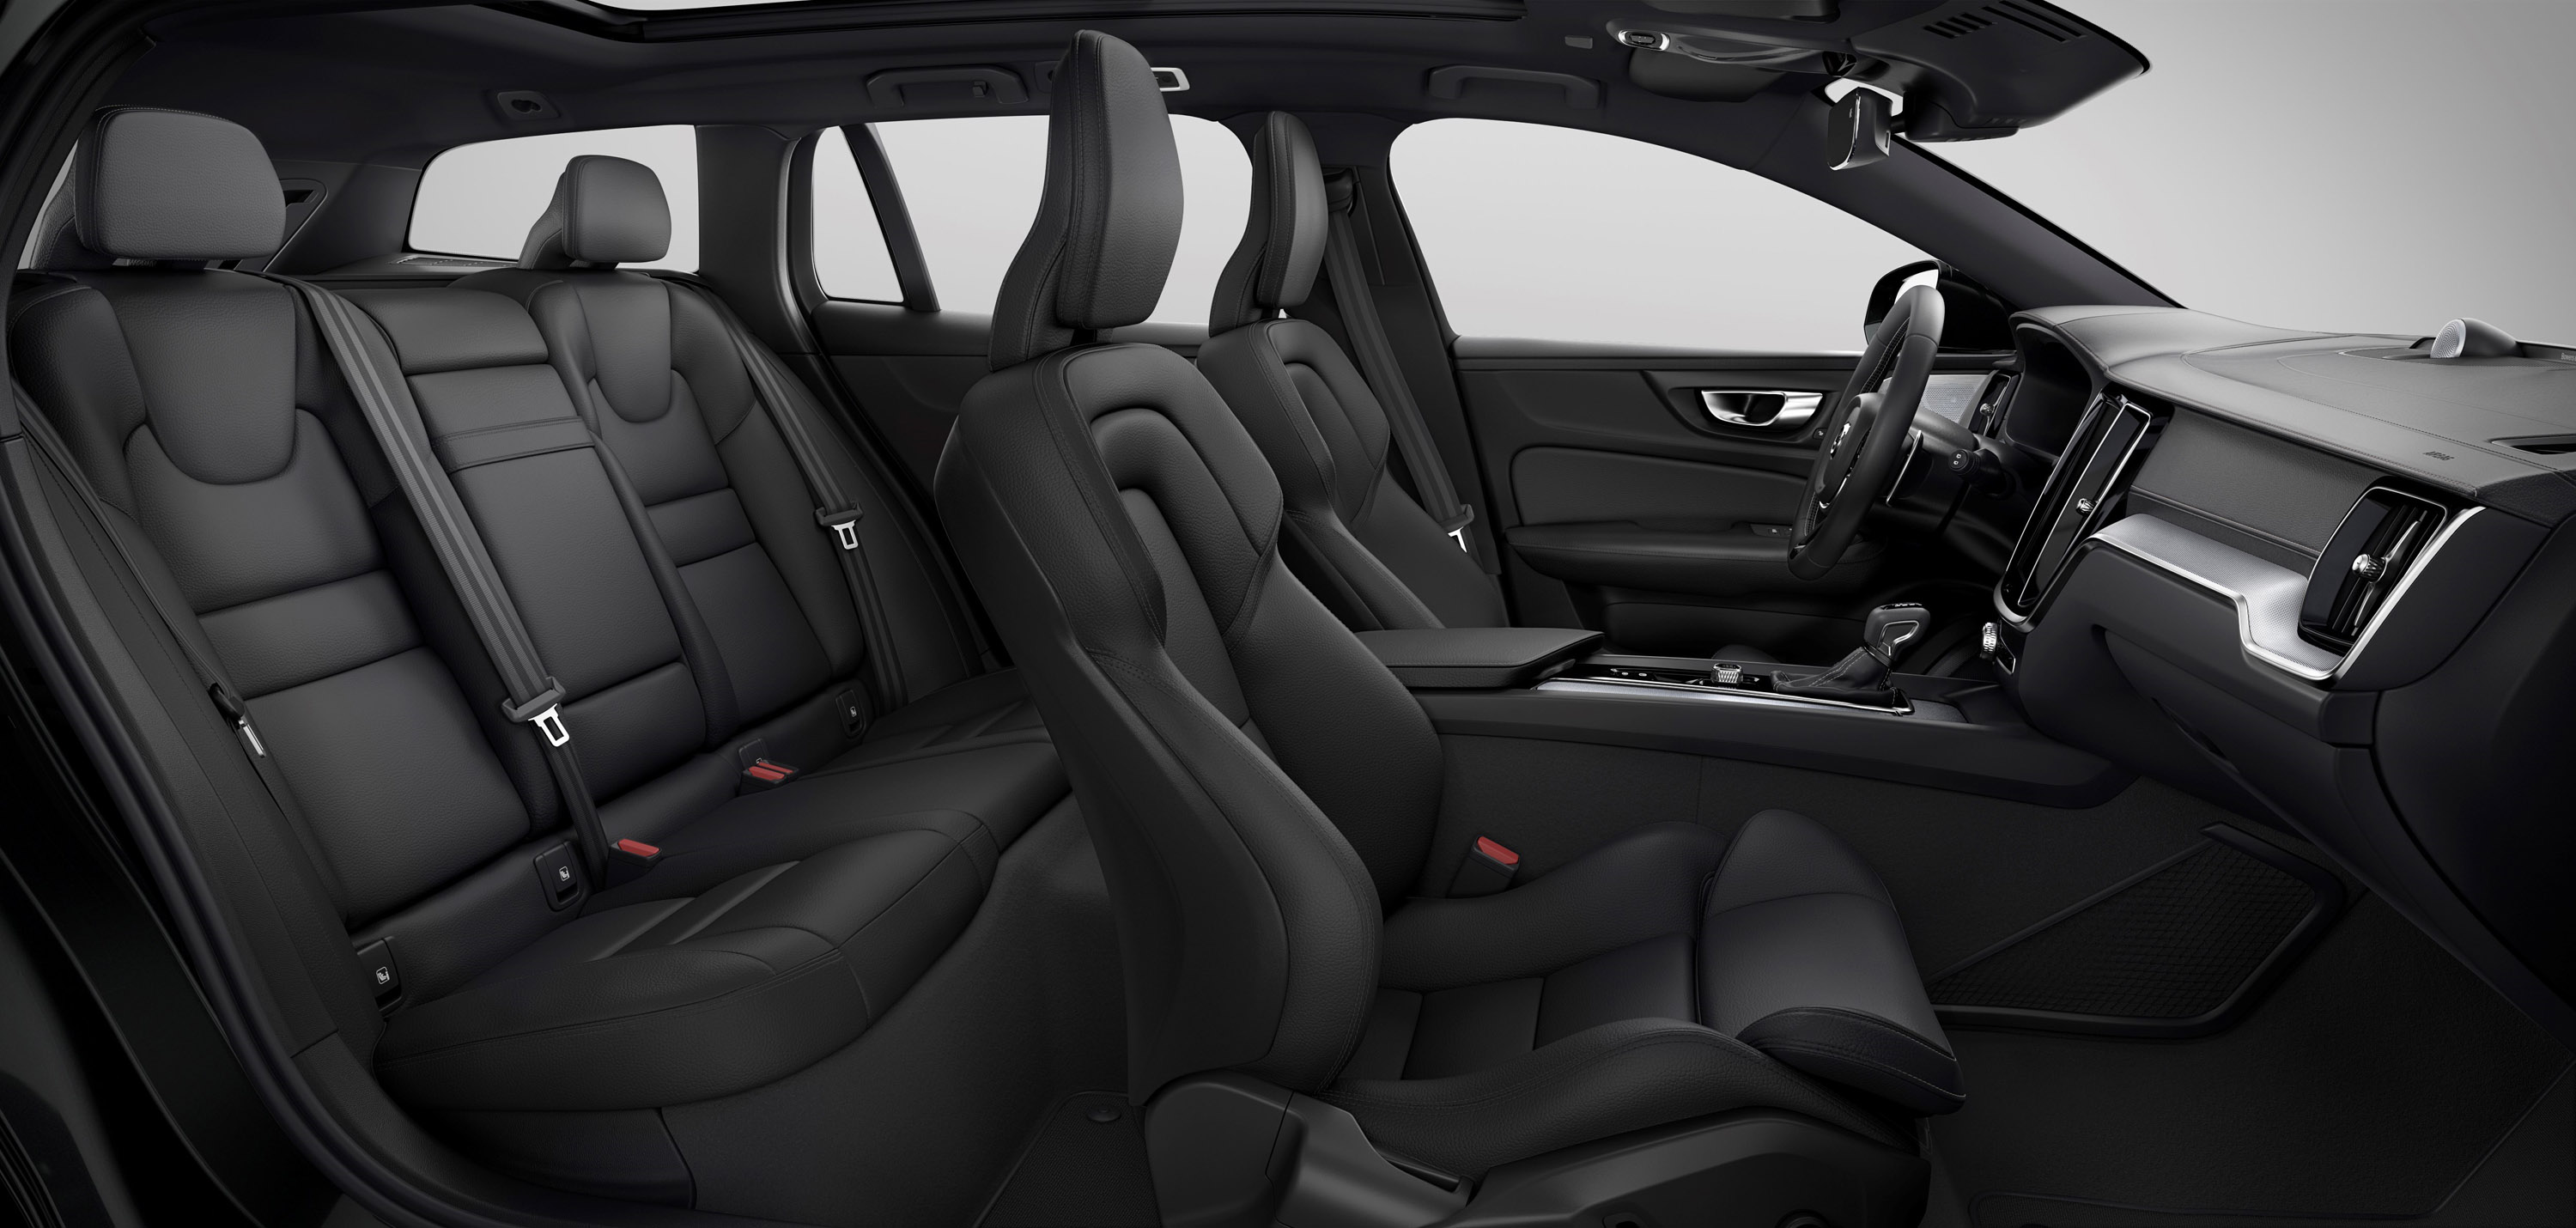 Кроме этого, Volvo демонстрирует R-Design Pro - еще один раз вариант комбинации двигателя/коробки, который на этот раз включает 19-дюймовые легкосплавные диски, темные тонированные задние окна, активные фары с адаптивной теневой технологией, переключ